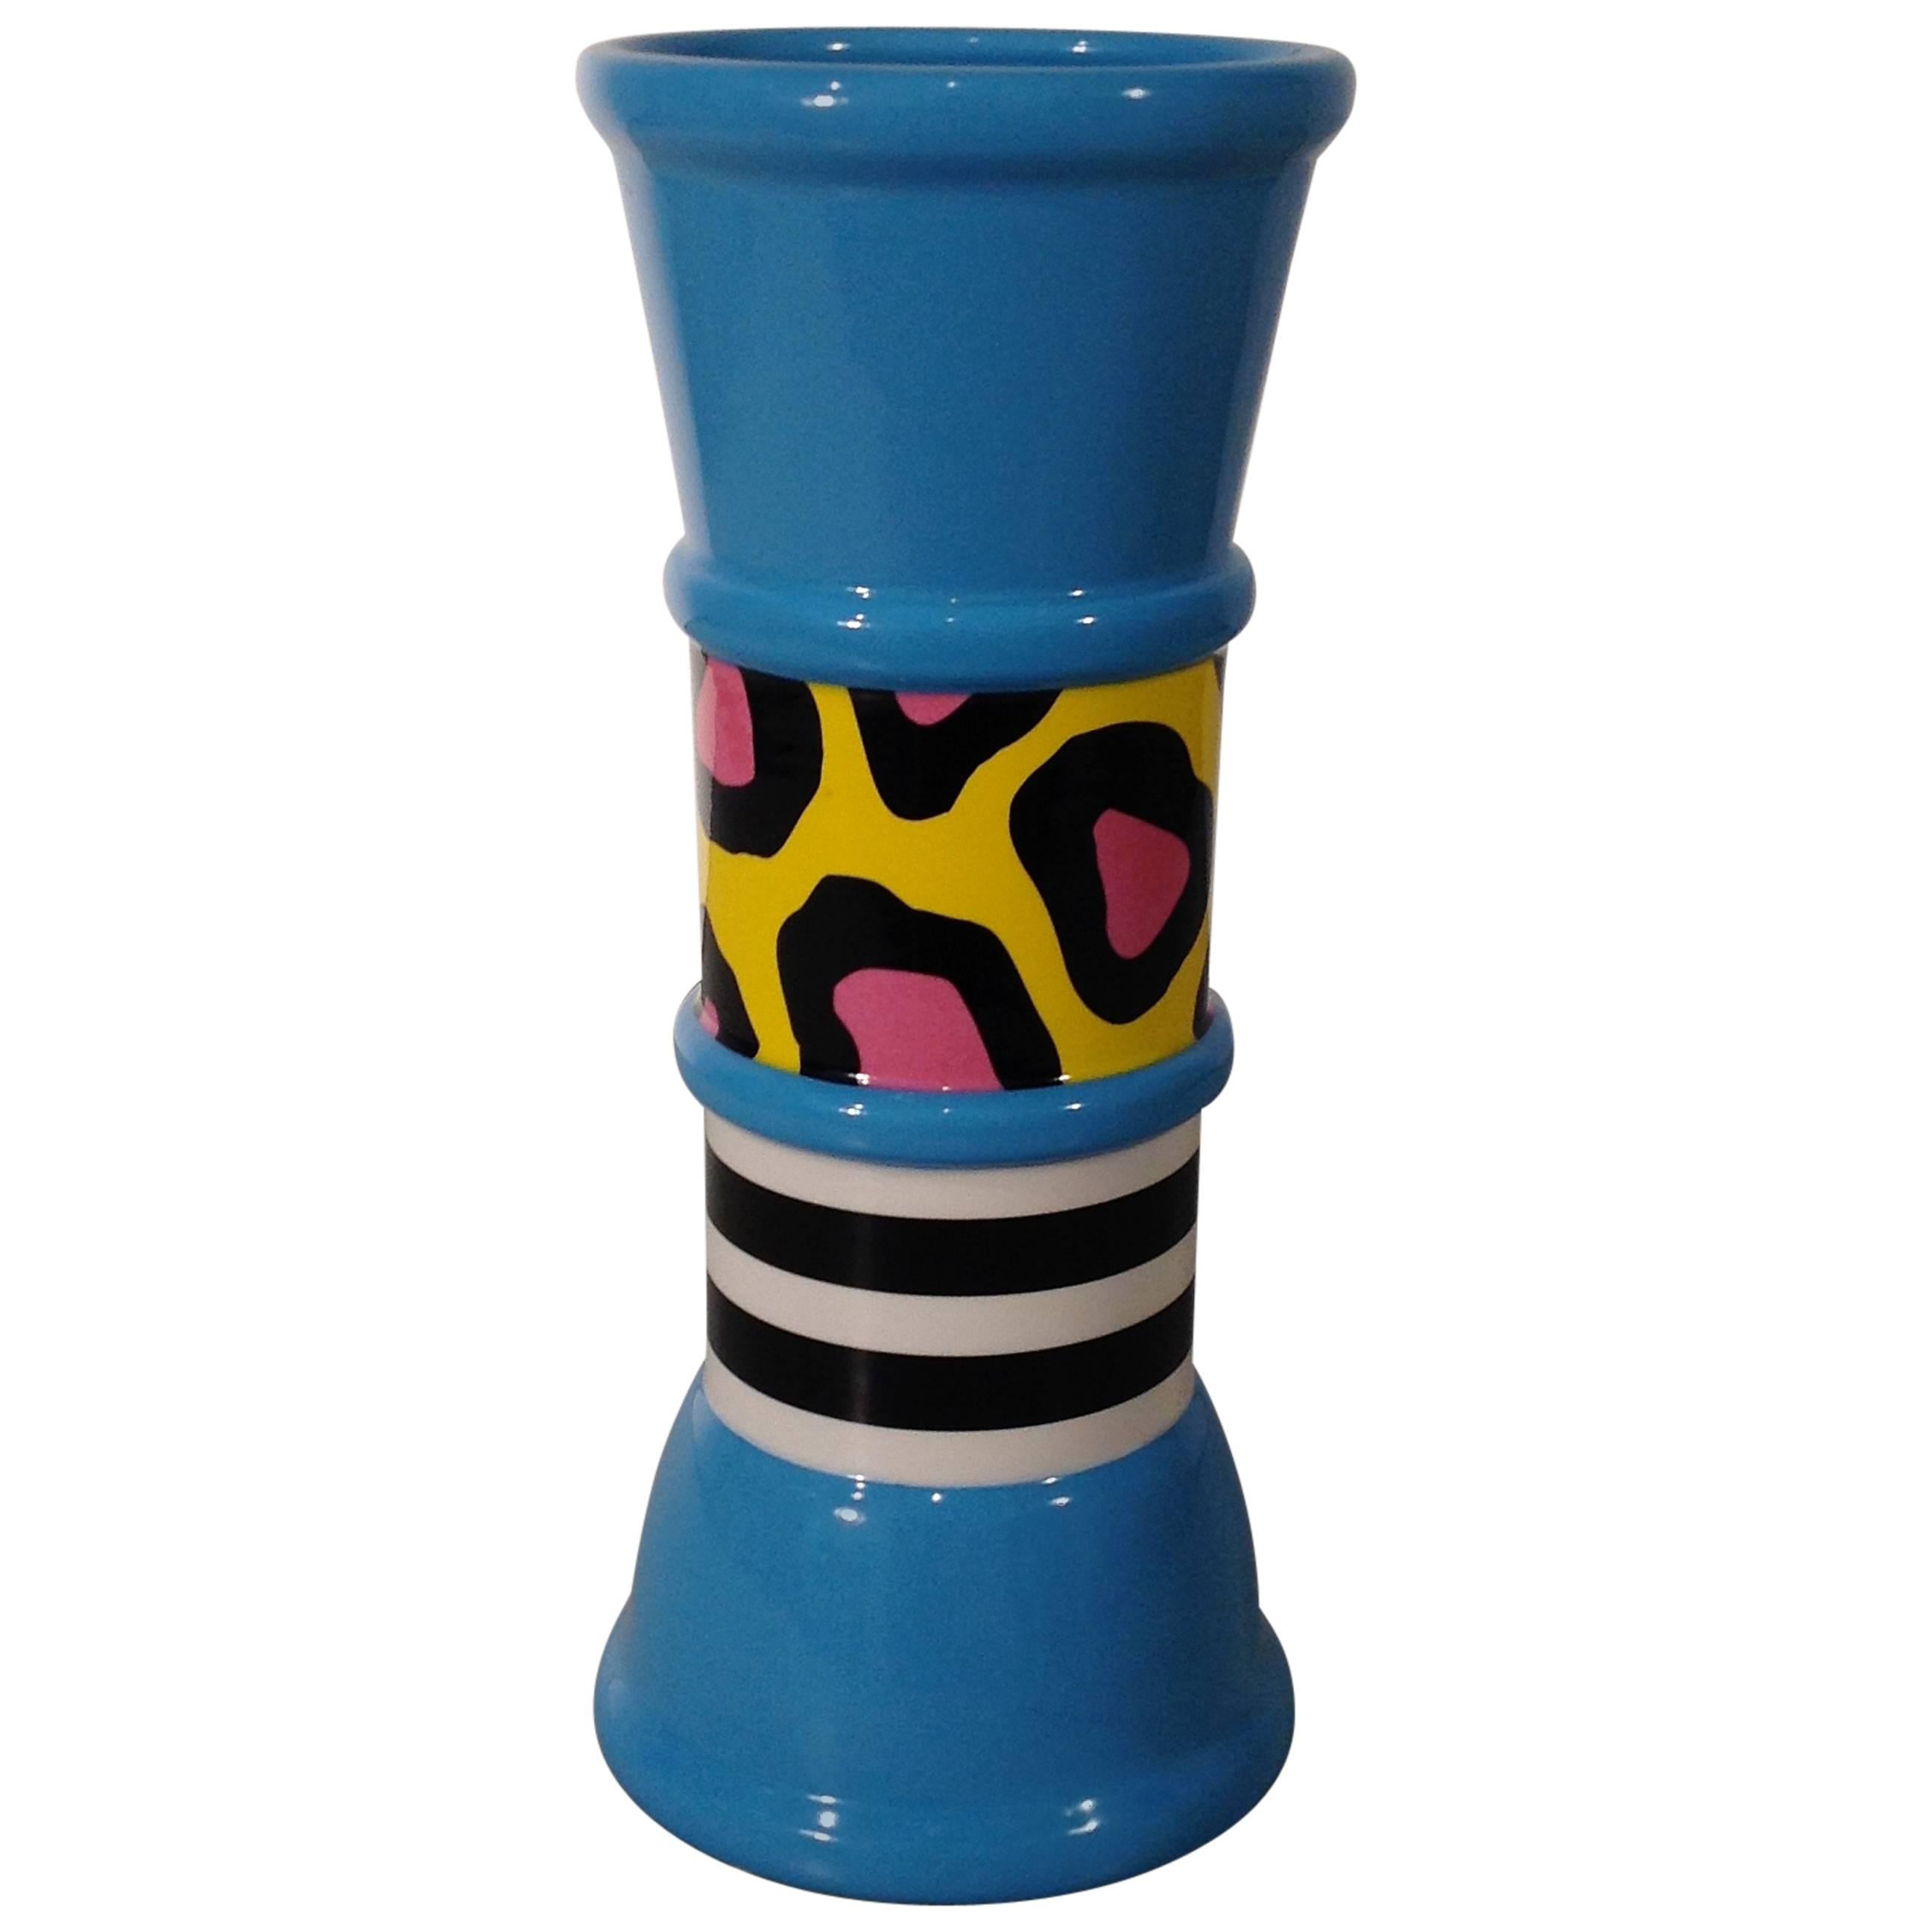 CARROT Ceramic Flower Vase by Nathalie du Pasquier for Memphis Milano